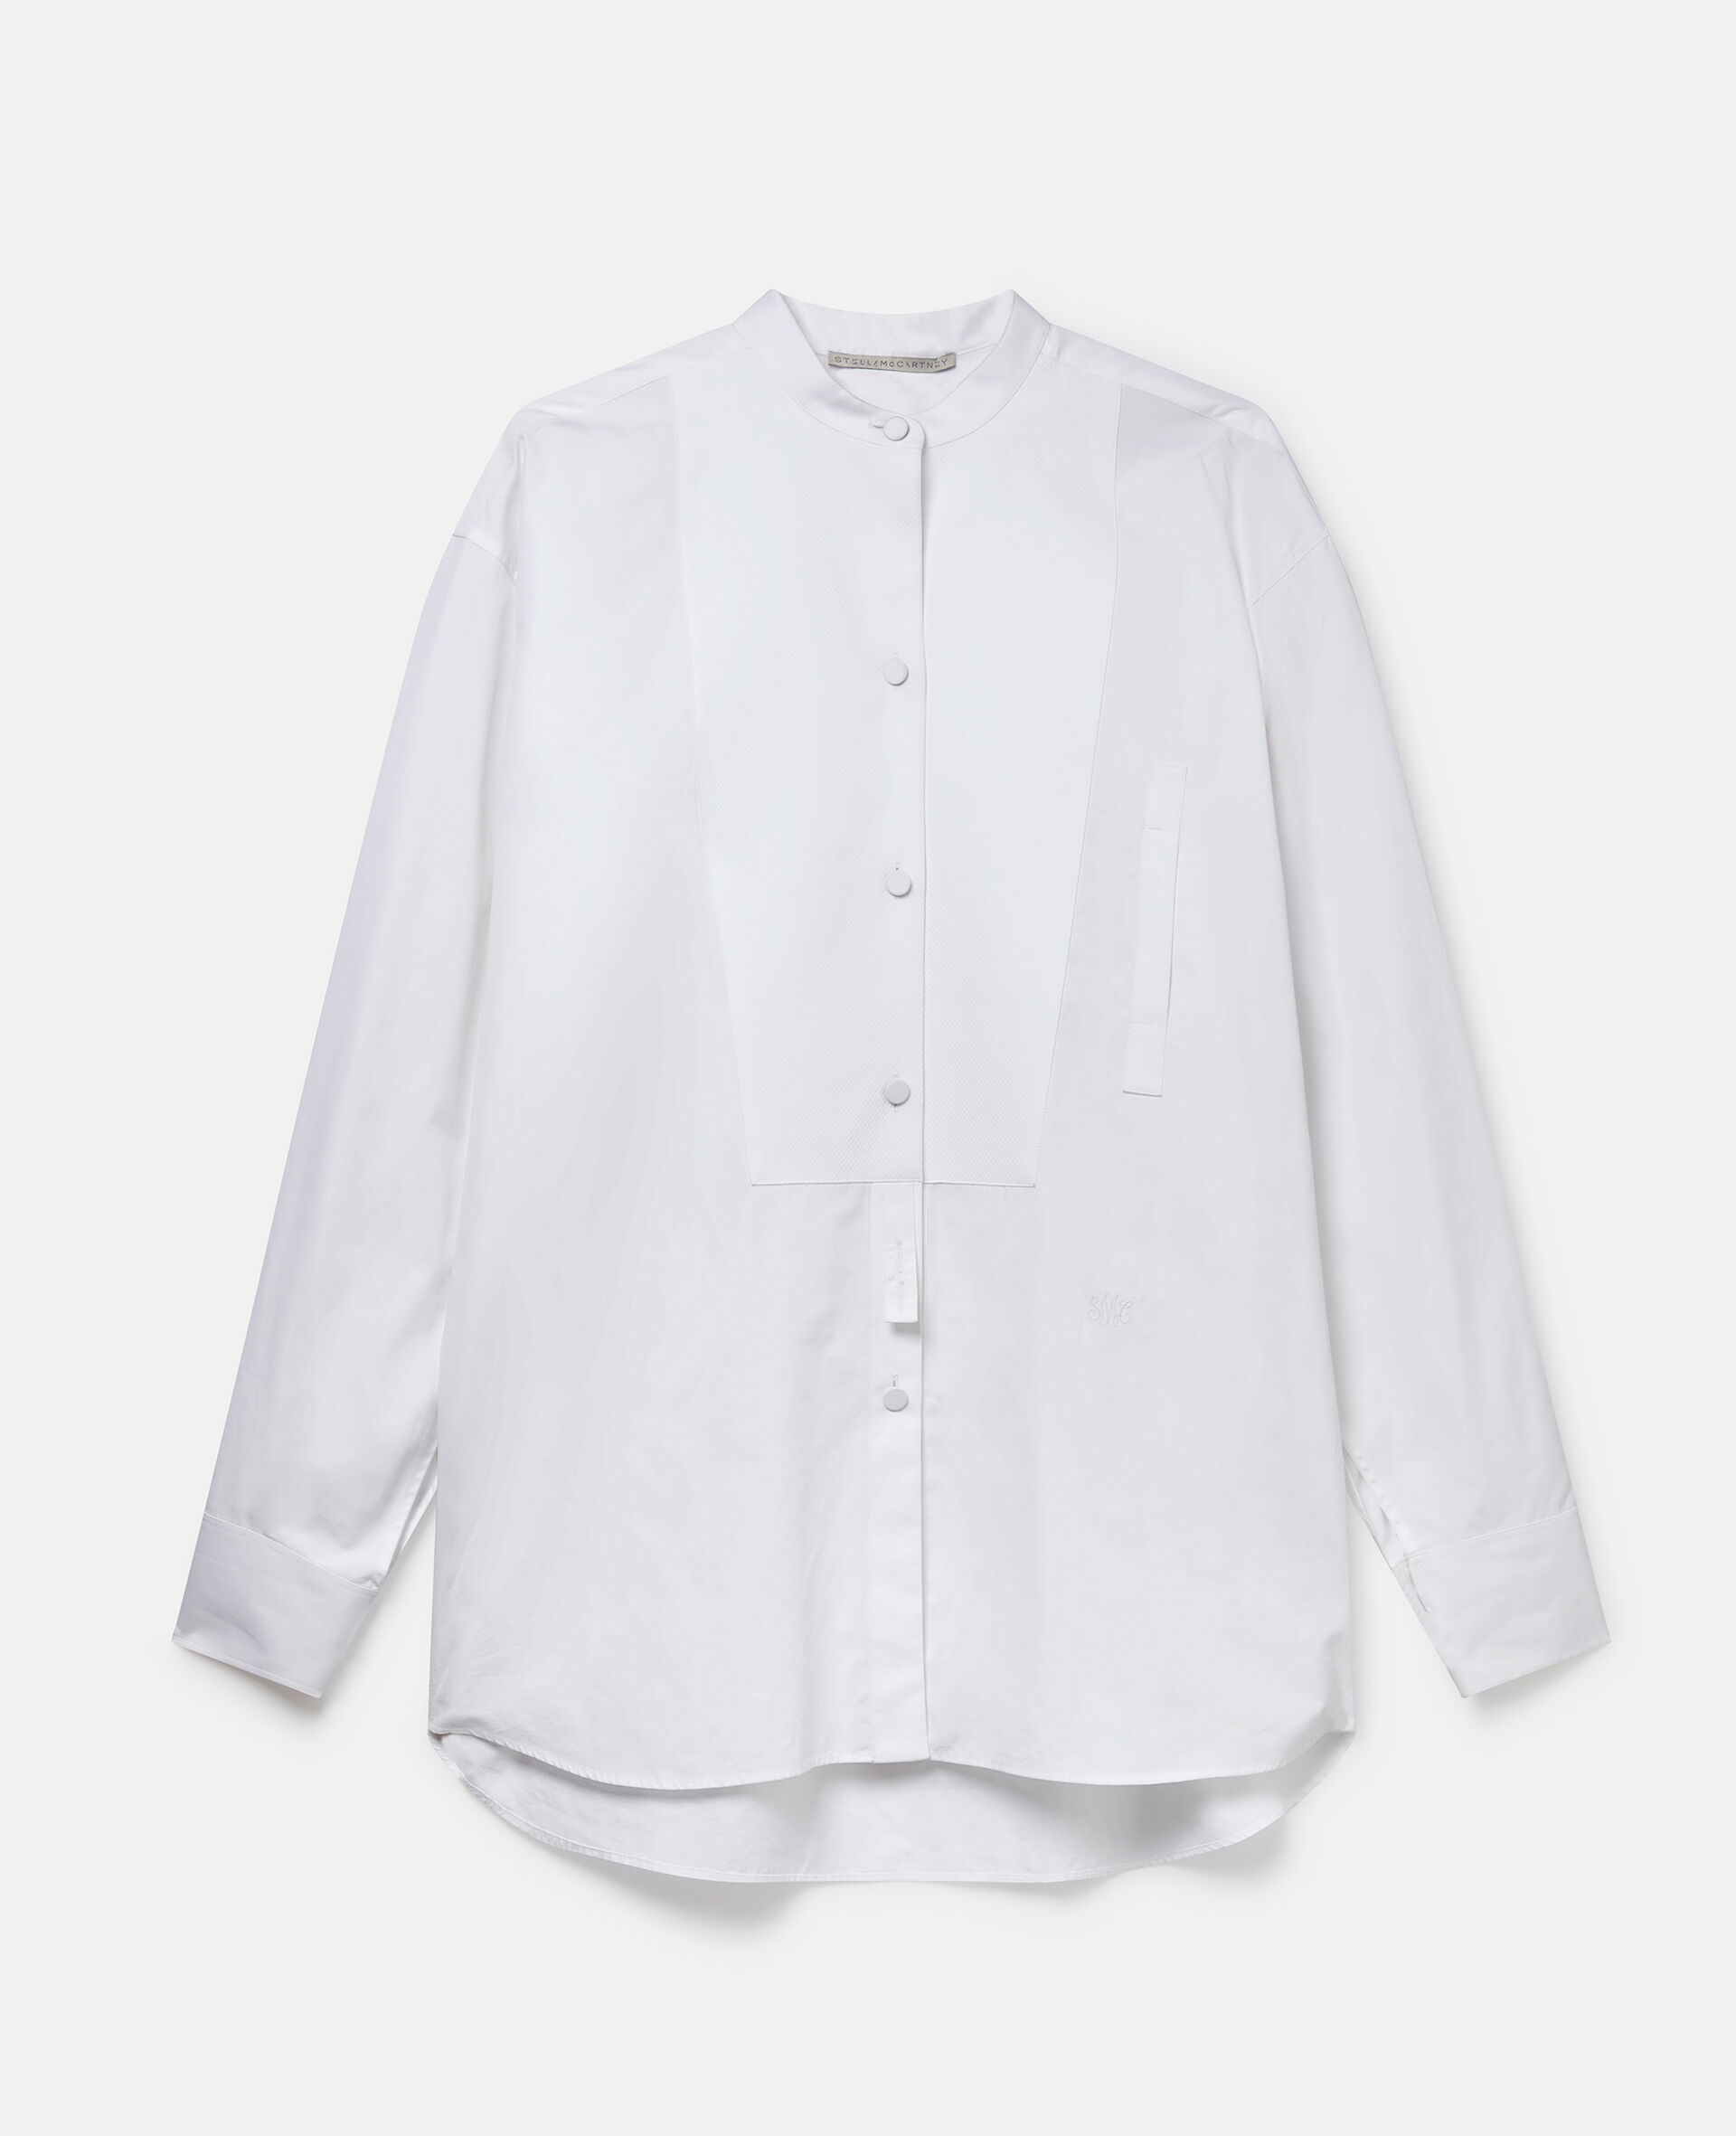 グランドファーザーカラー コットン タキシードシャツ-ホワイト-medium